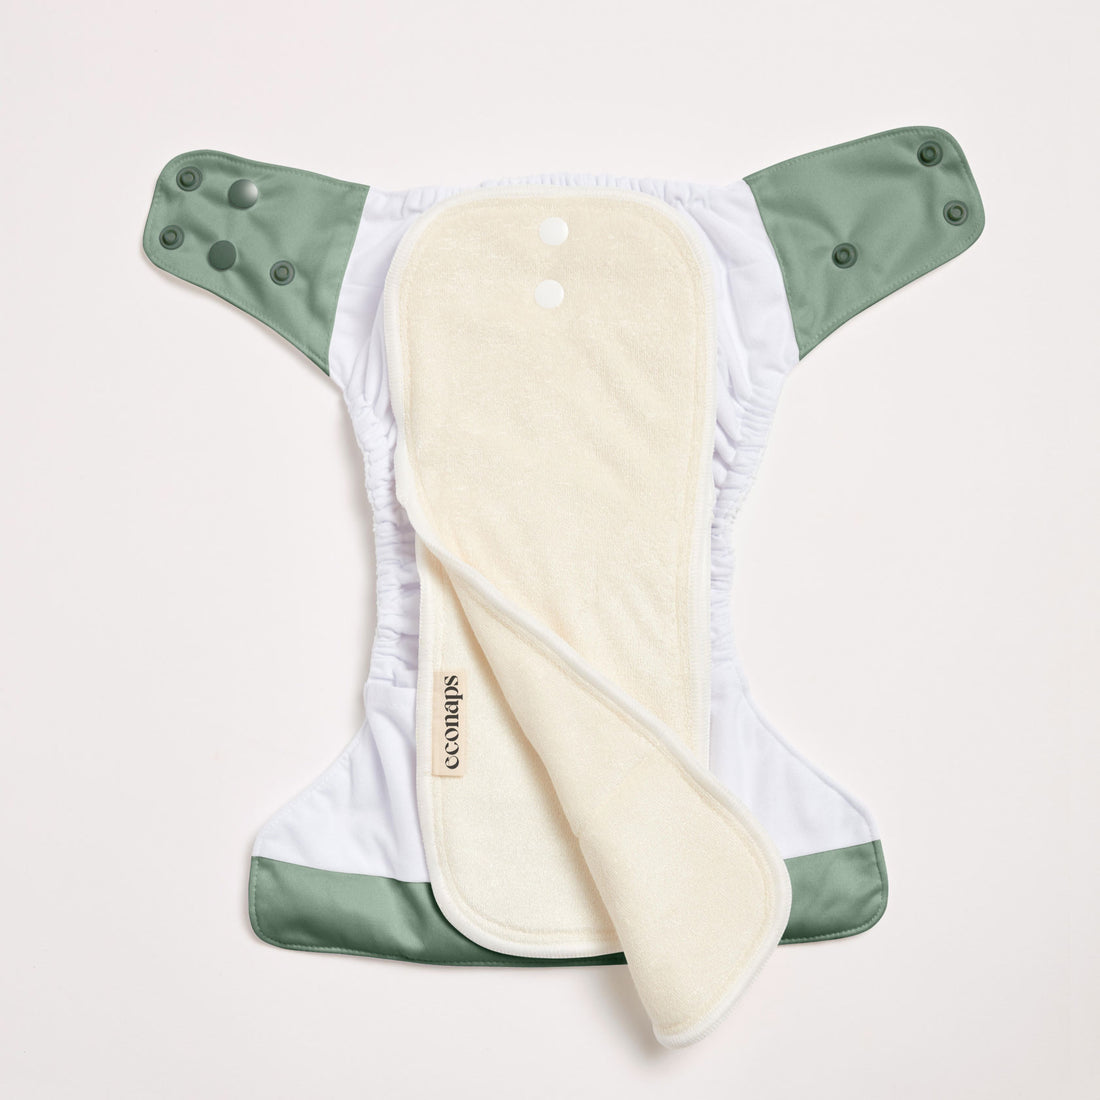 Olive 2.0 Modern Cloth Diaper